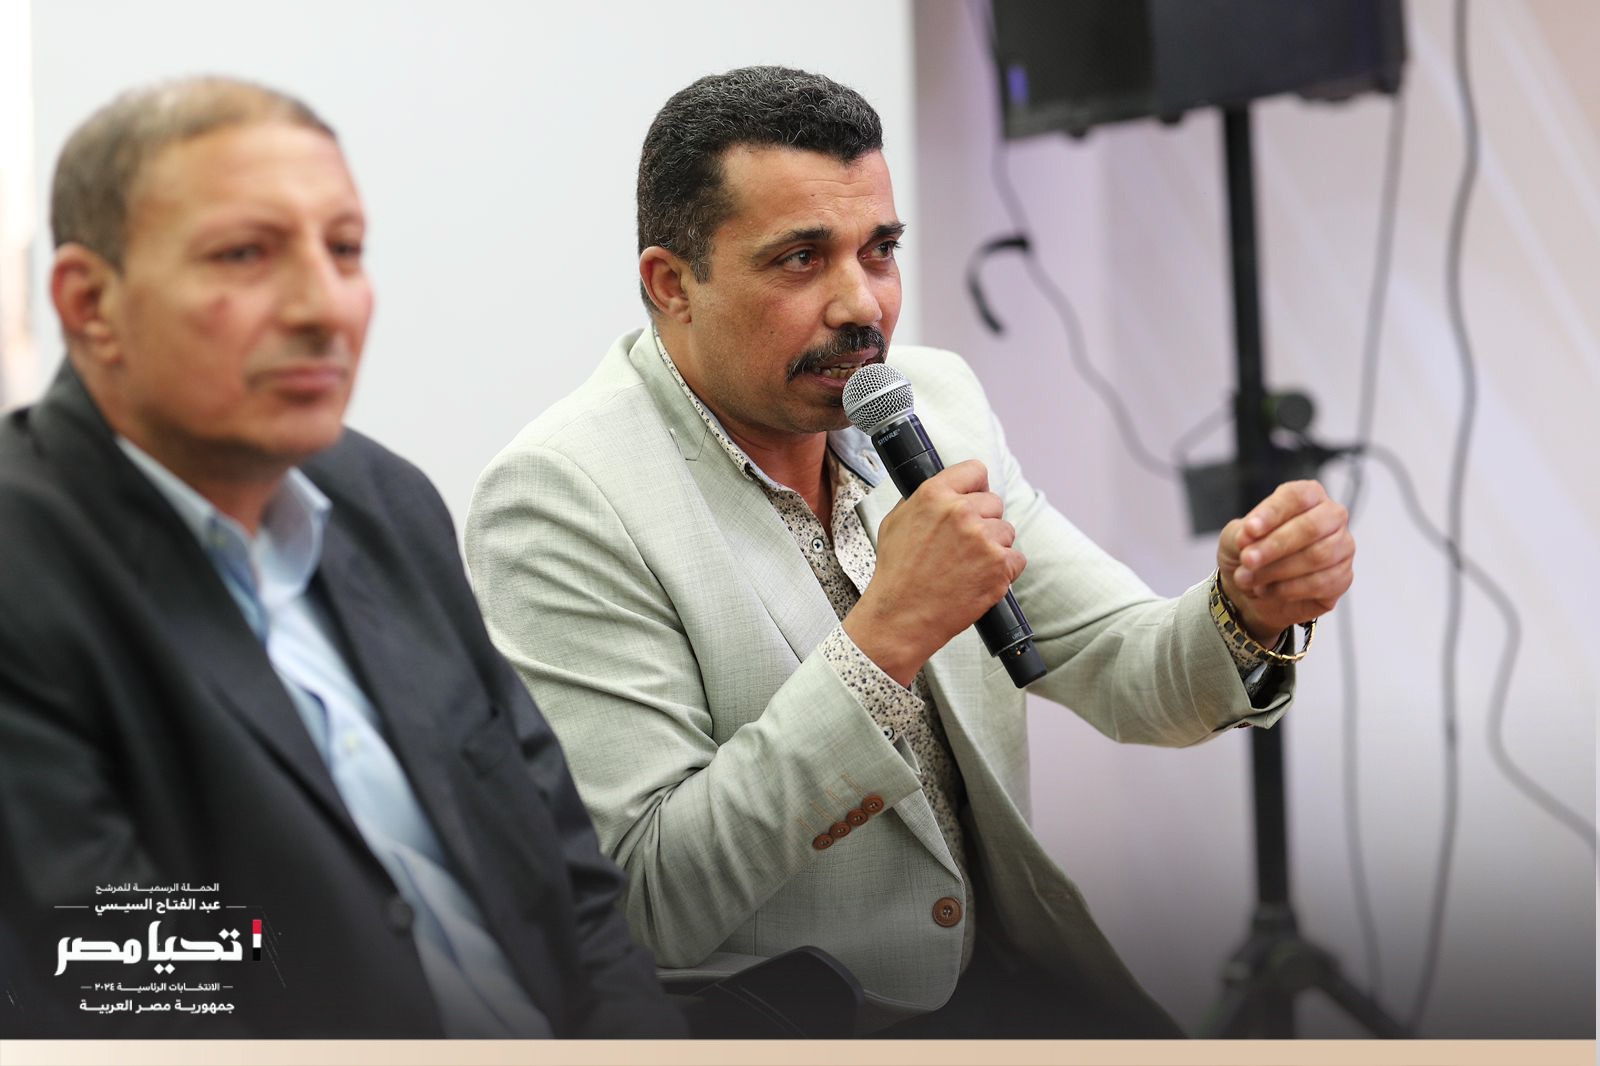 الرسمية للمرشح عبد الفتاح السيسي تستقبل وفد نقابة العاملين بالزراعة والري والصيد واستصلاح الأراضي (7)